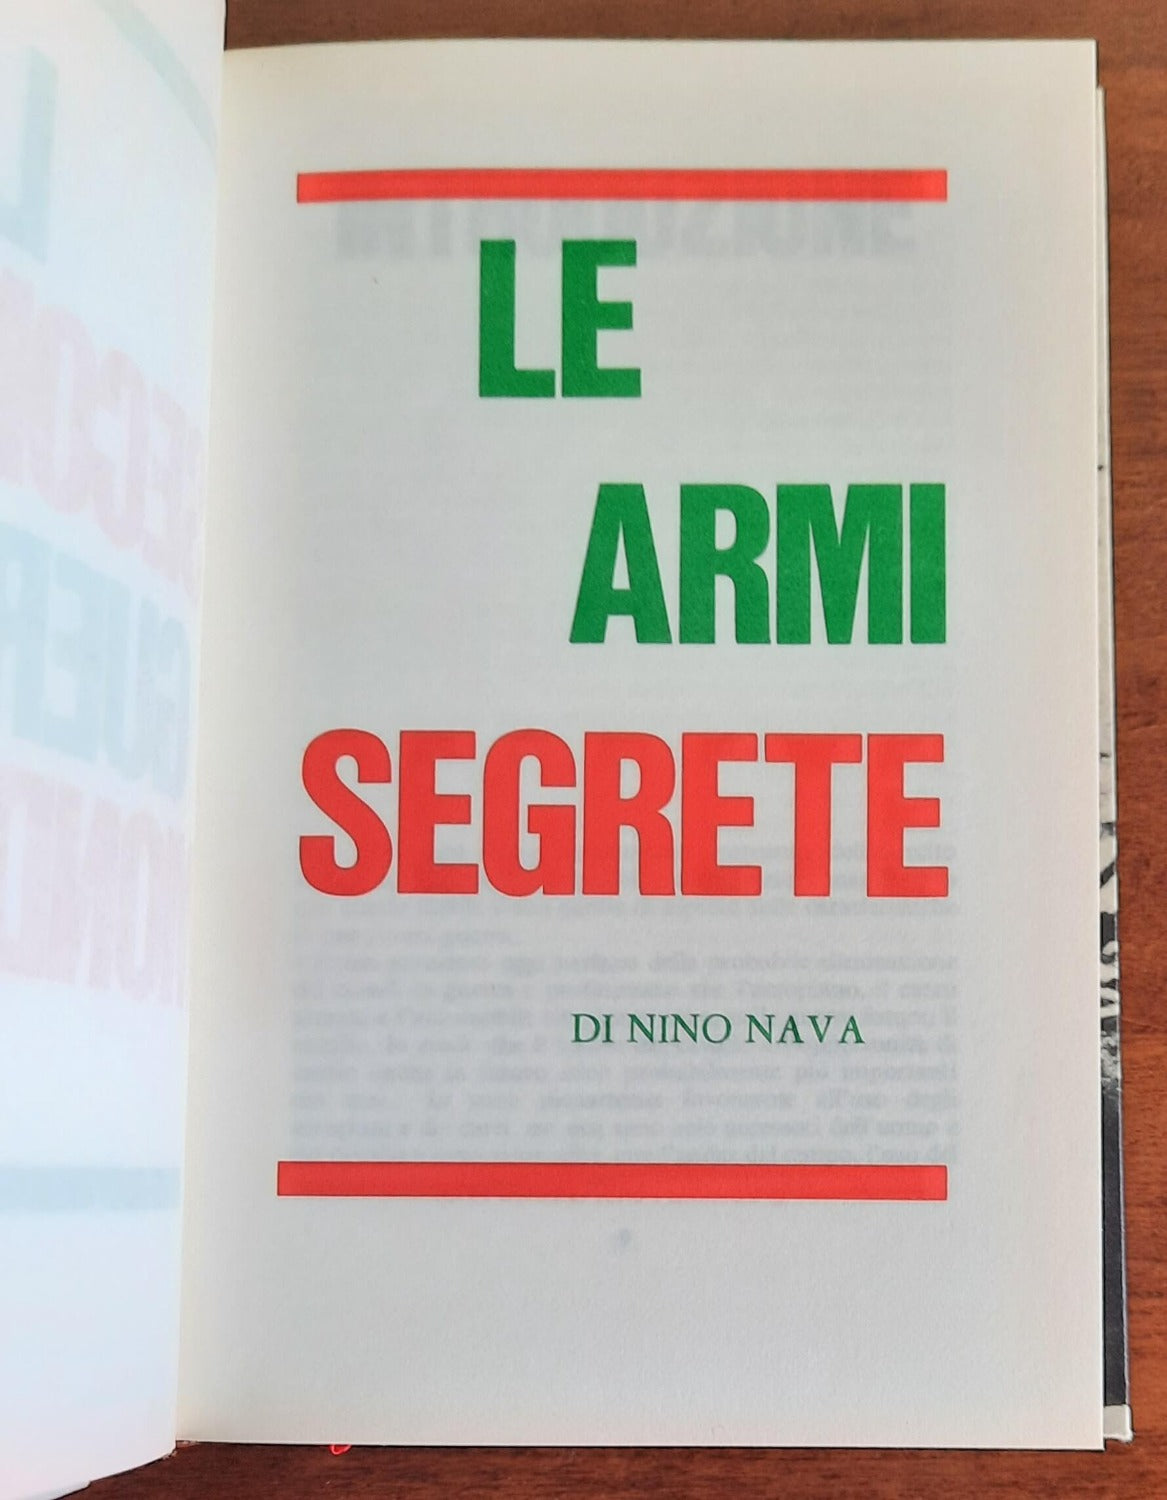 Le armi segrete - Edizioni Ferni - 1974